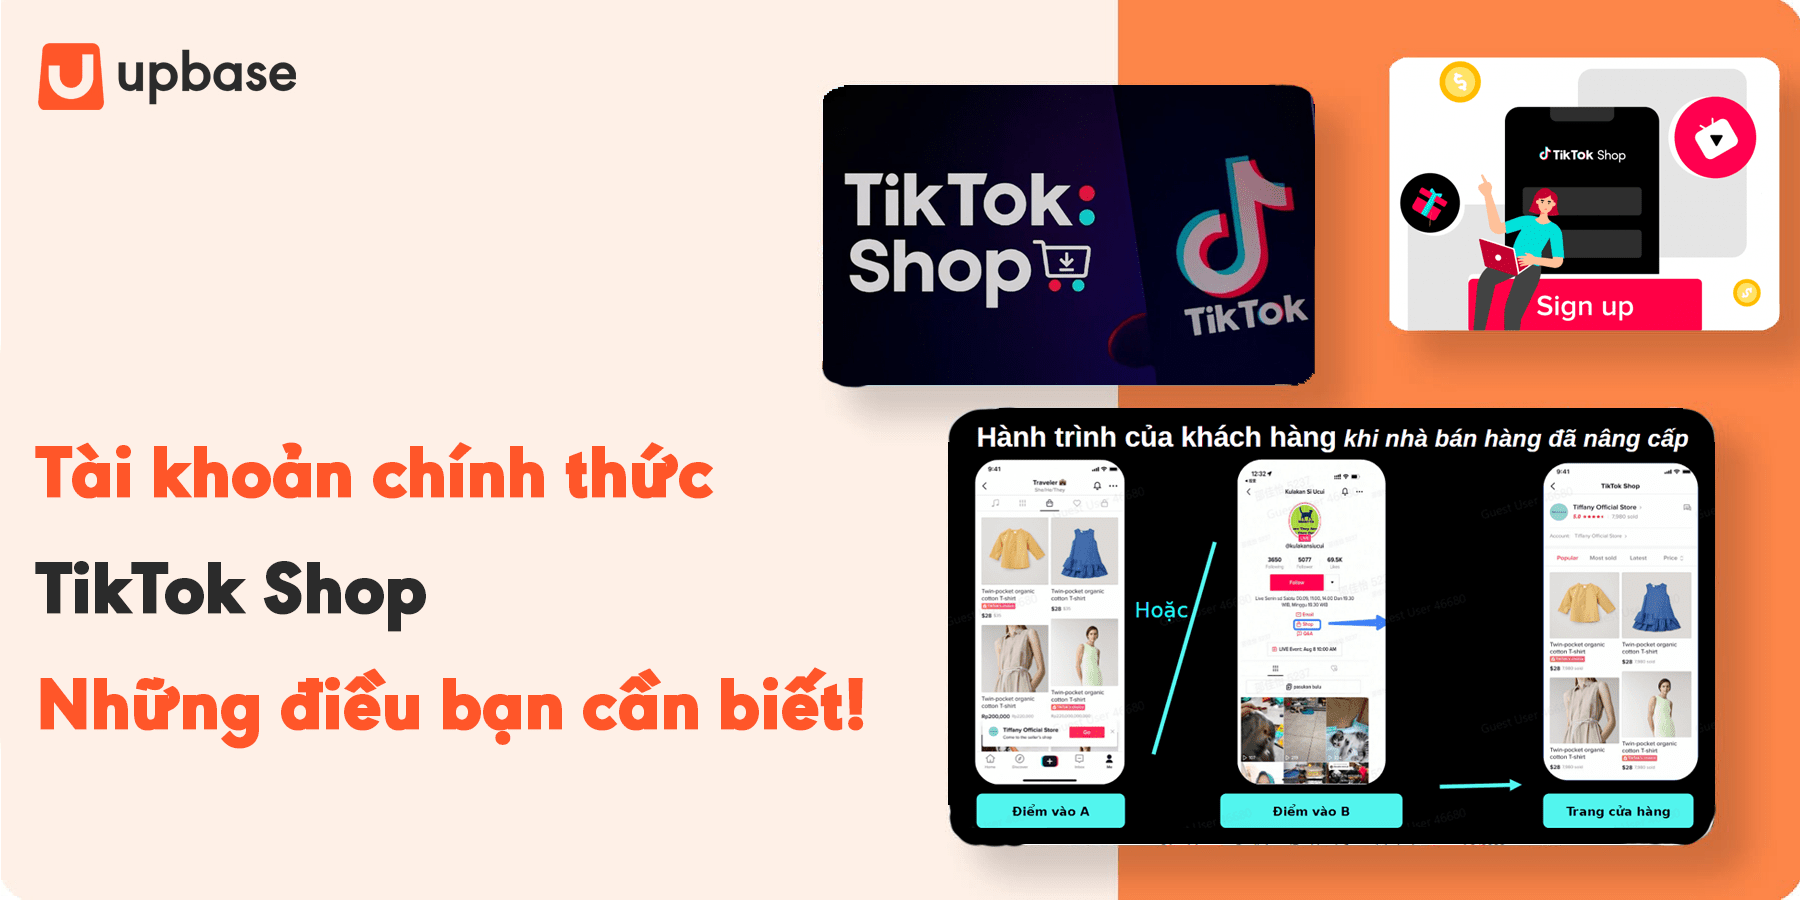 Tài khoản chính thức TikTok Shop